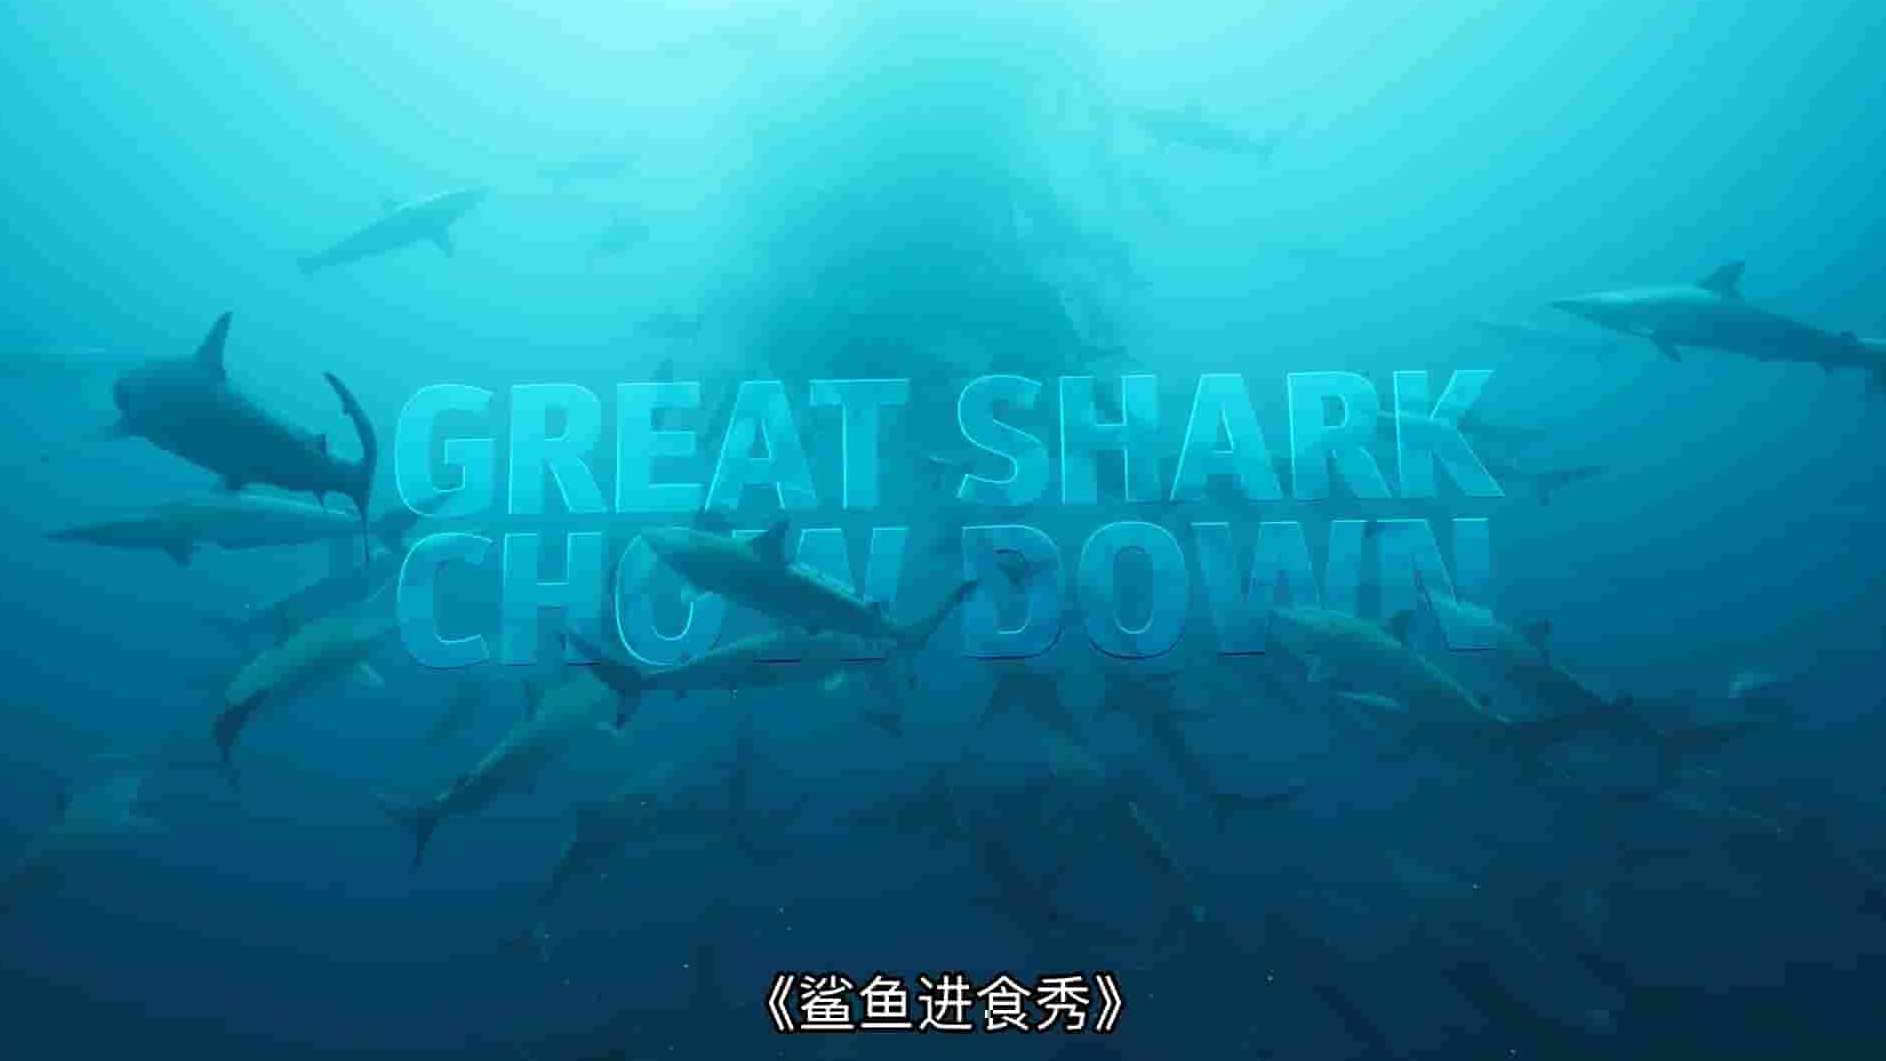 国家地理《鲨鱼进食秀 Great Shark Chow Down 2019》全1集 英语多国中字 1080P高清网盘下载